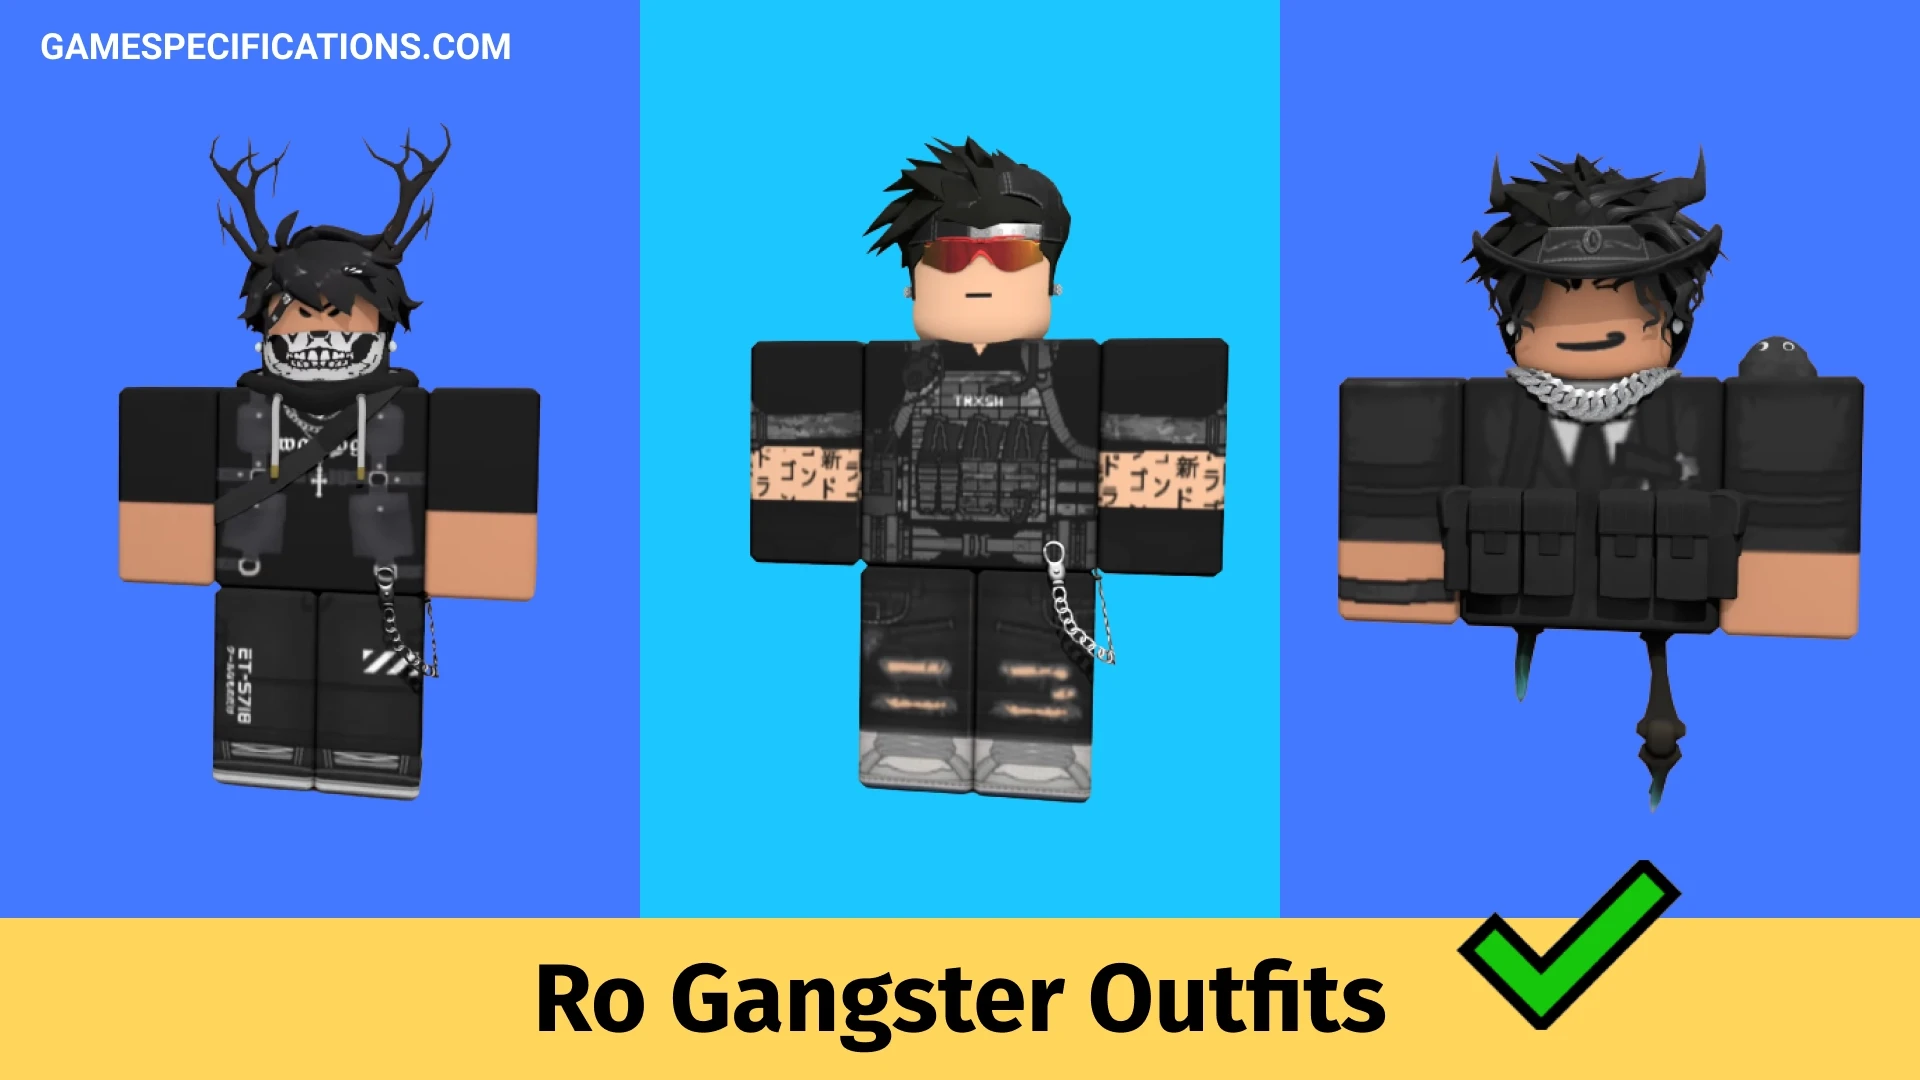 Tinh thần quyết chiến và mạnh mẽ luôn được thể hiện qua những Roblox Gangster Outfits đầy năng động và sáng tạo. Đây là lựa chọn hoàn hảo cho những ai yêu thích thể loại Gangster và muốn đổi mới phong cách của mình.